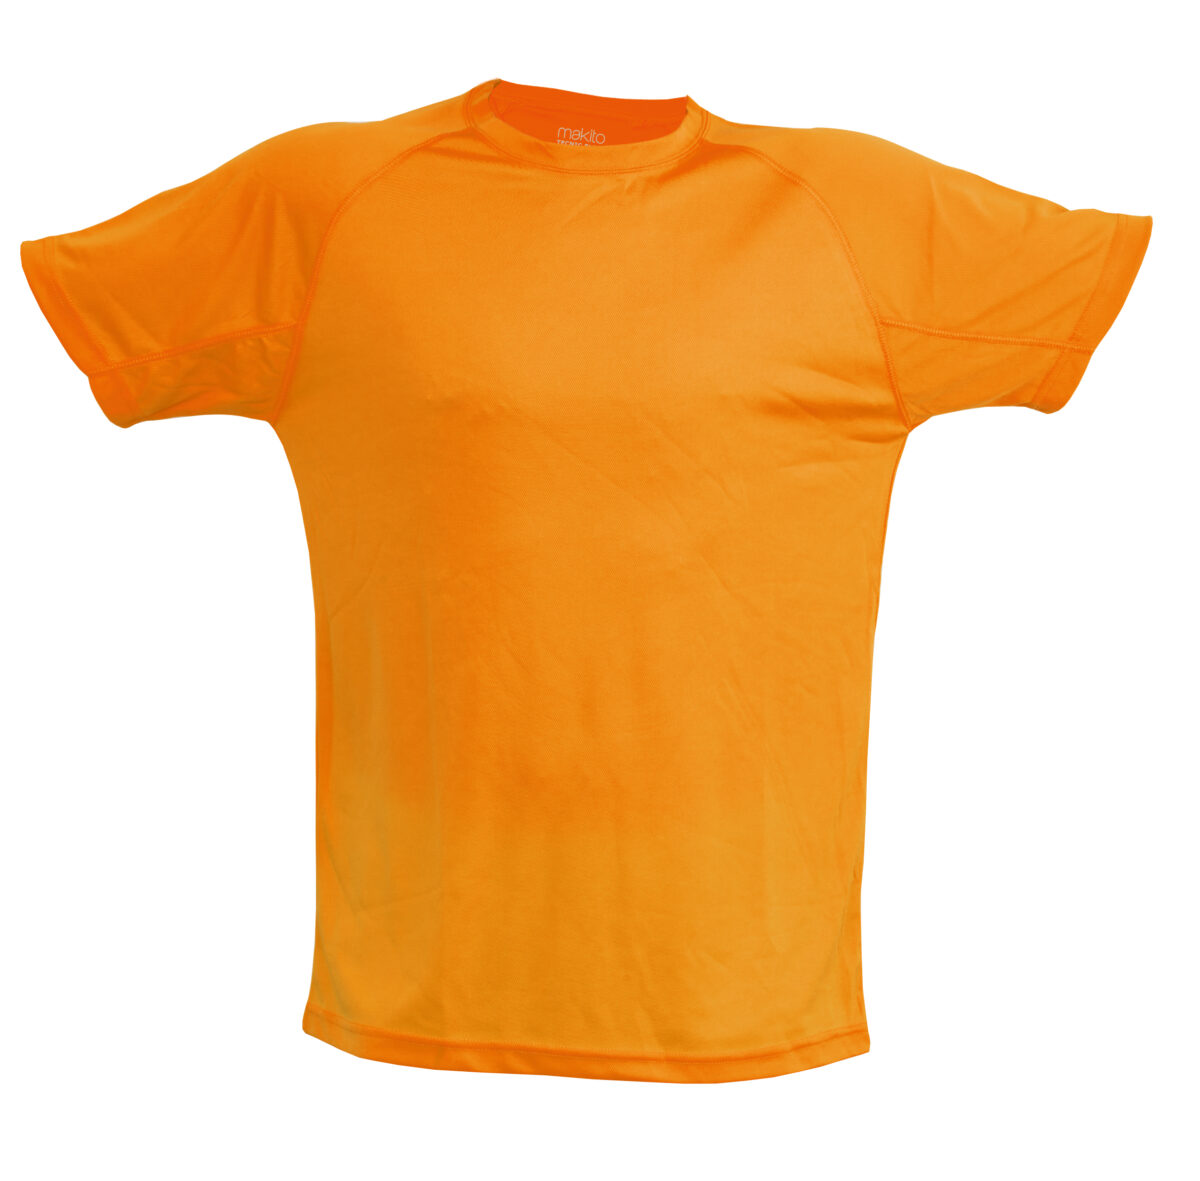 Koszulka pomarańczowa, reklamowa robocza nadrukiem gadżet reklamowy